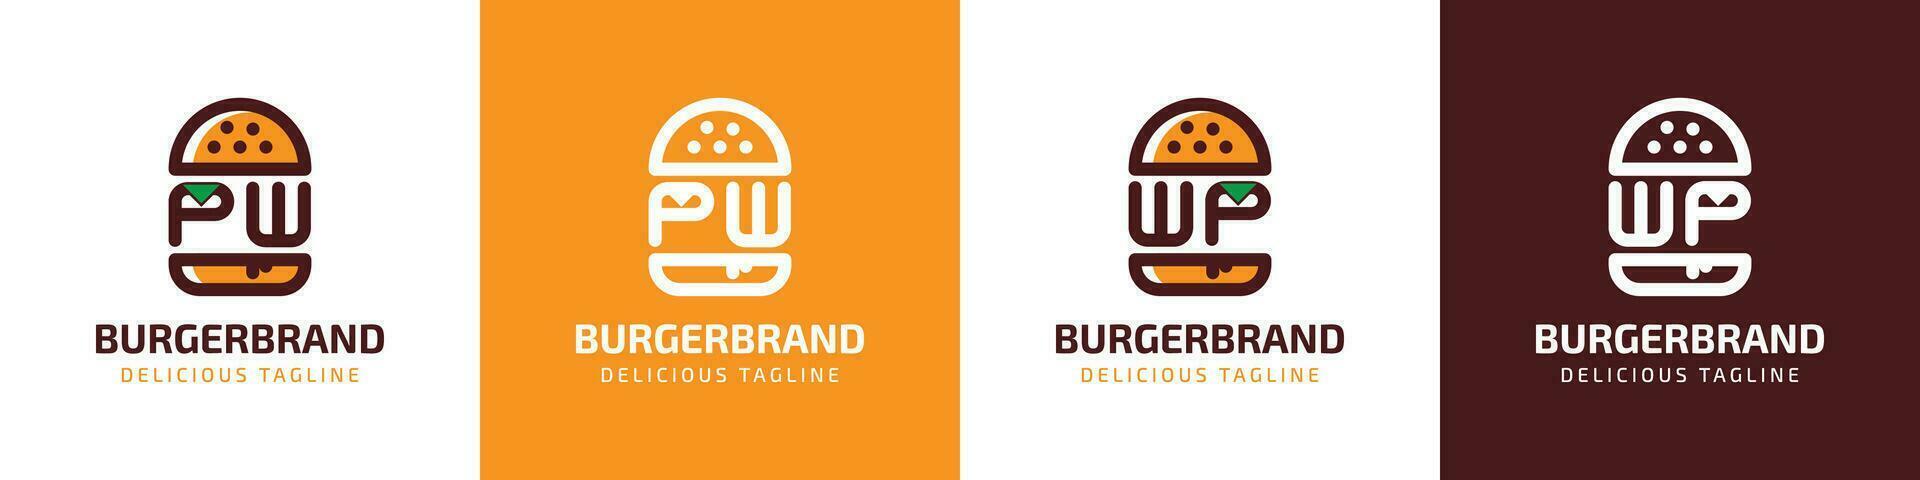 brev pw och wp burger logotyp, lämplig för några företag relaterad till burger med pw eller wp initialer. vektor